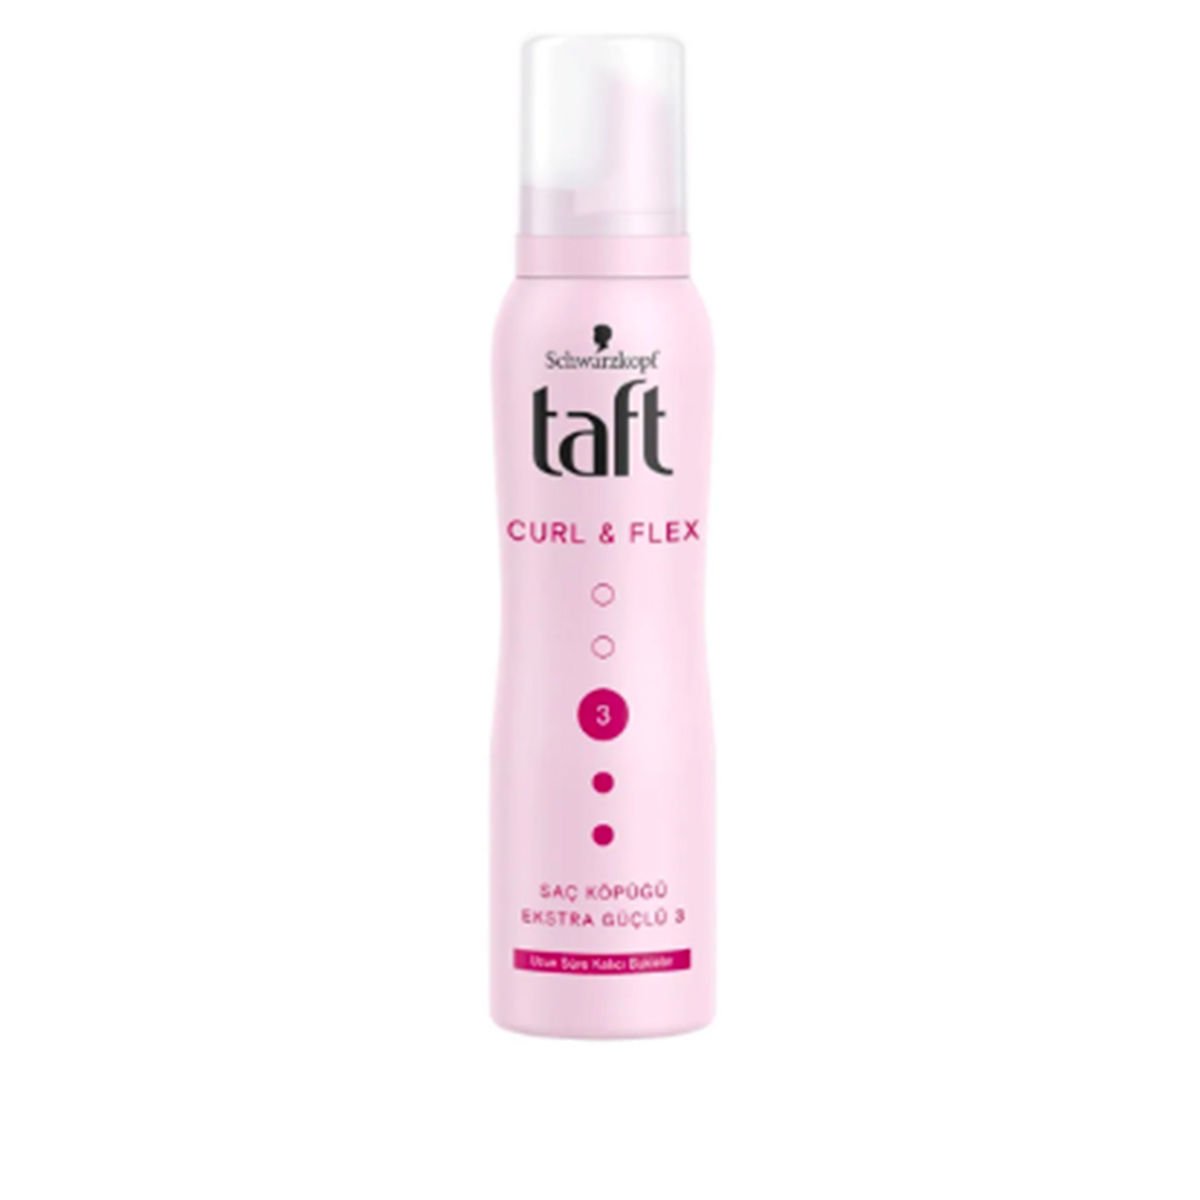 Taft Curl & Flex Saç Köpüğü 150 ml